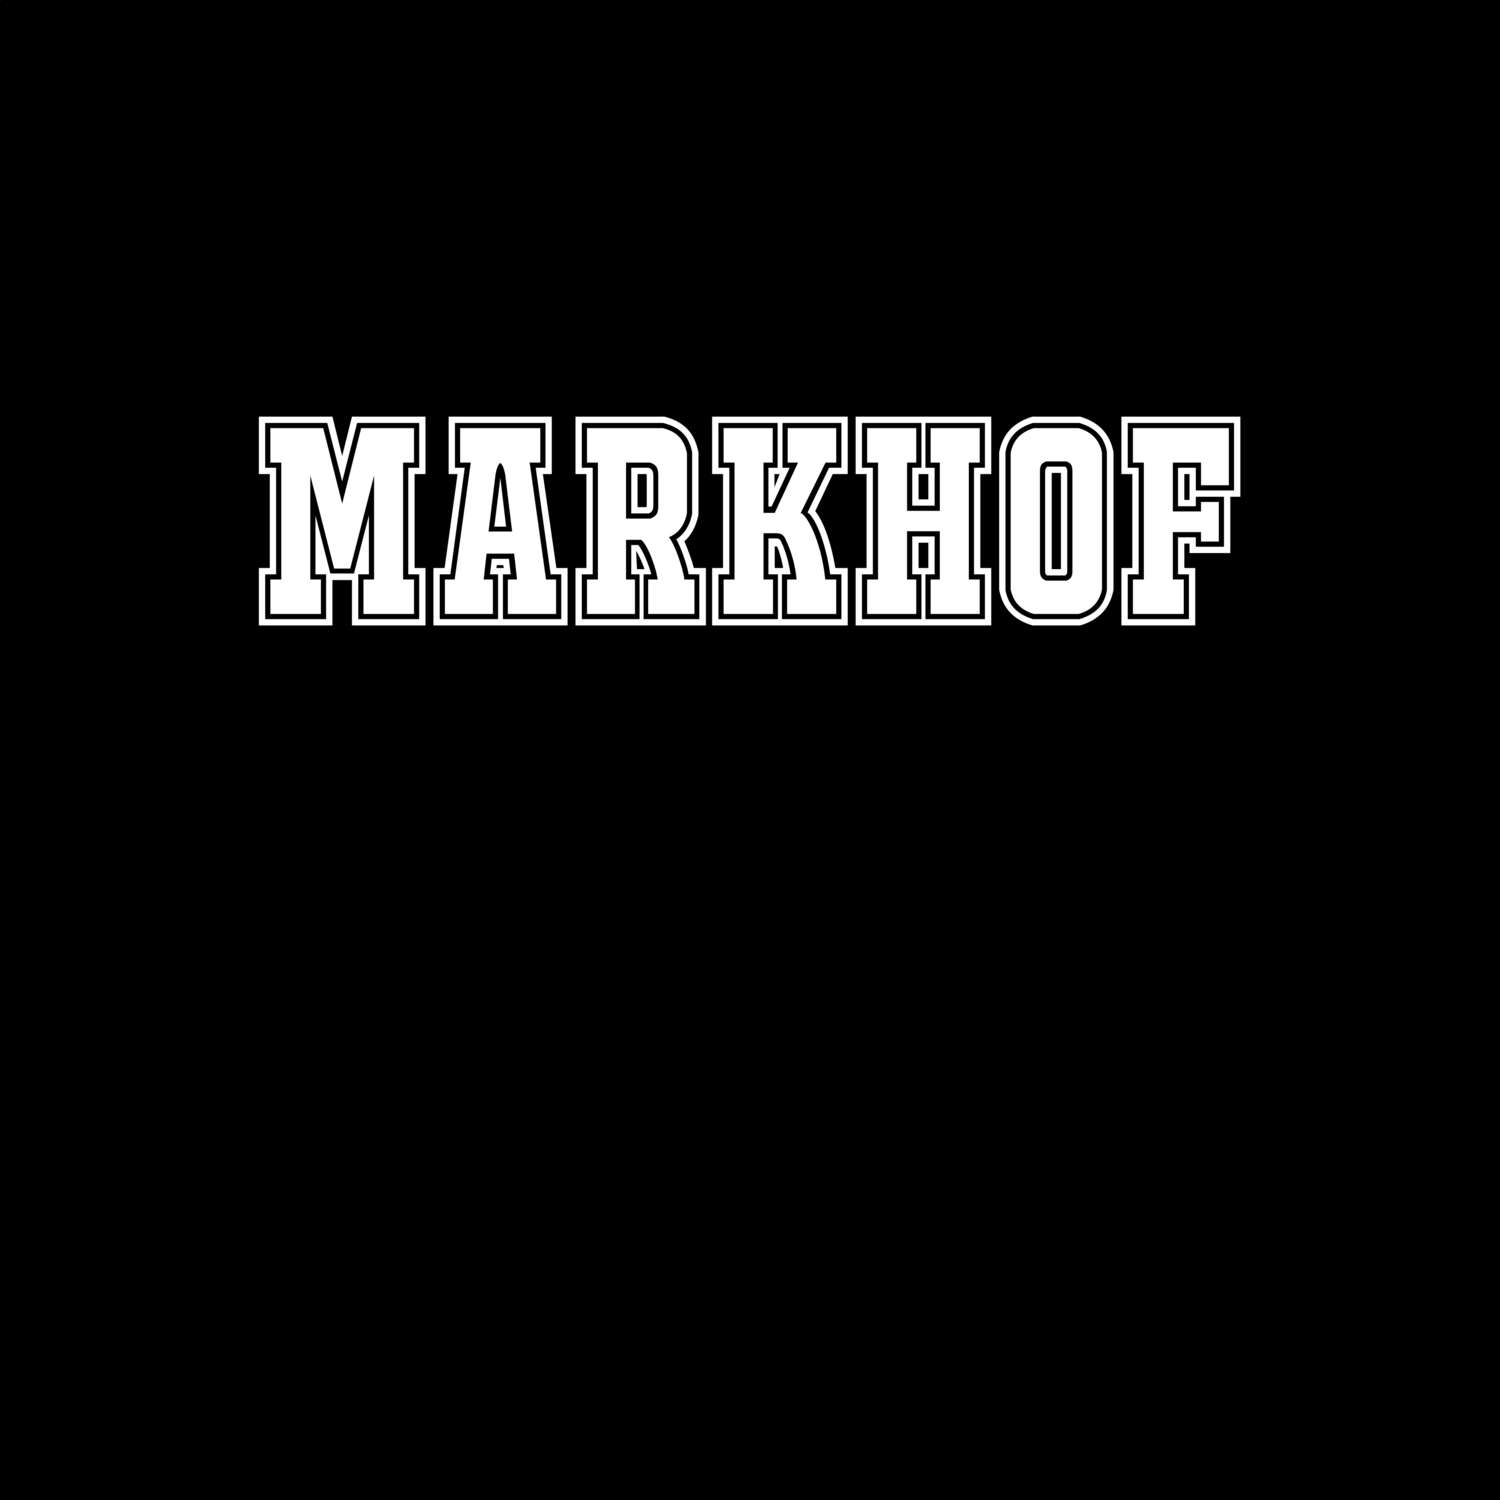 Markhof T-Shirt »Classic«